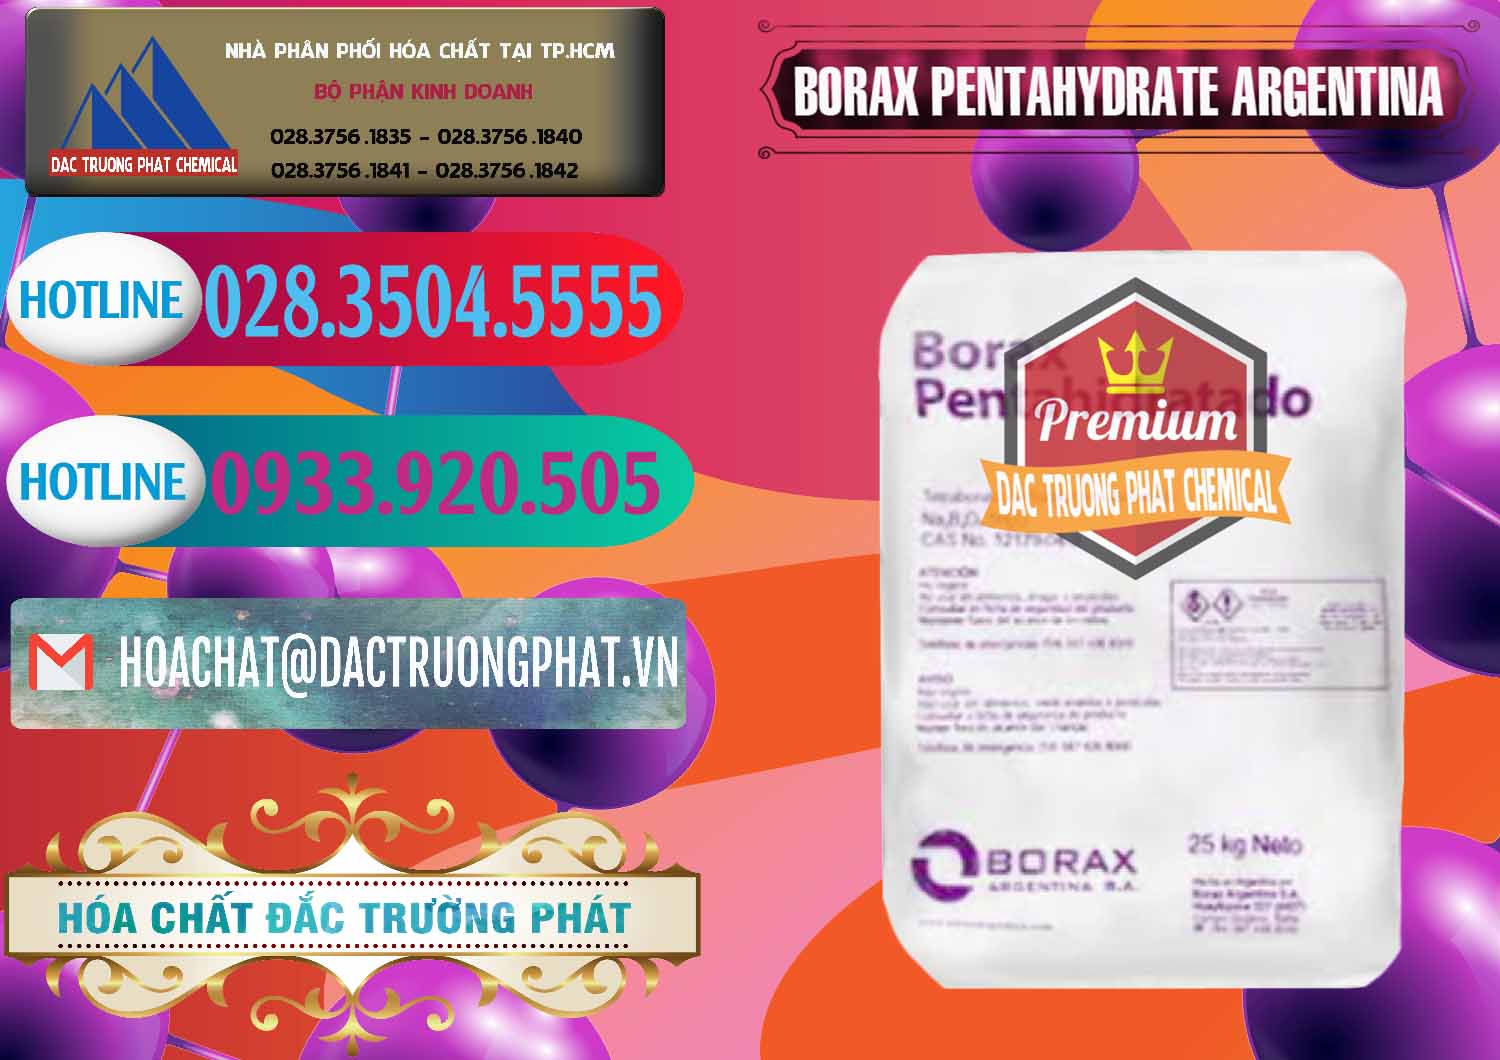 Cty chuyên bán và cung cấp Borax Pentahydrate Argentina - 0447 - Phân phối ( cung cấp ) hóa chất tại TP.HCM - truongphat.vn